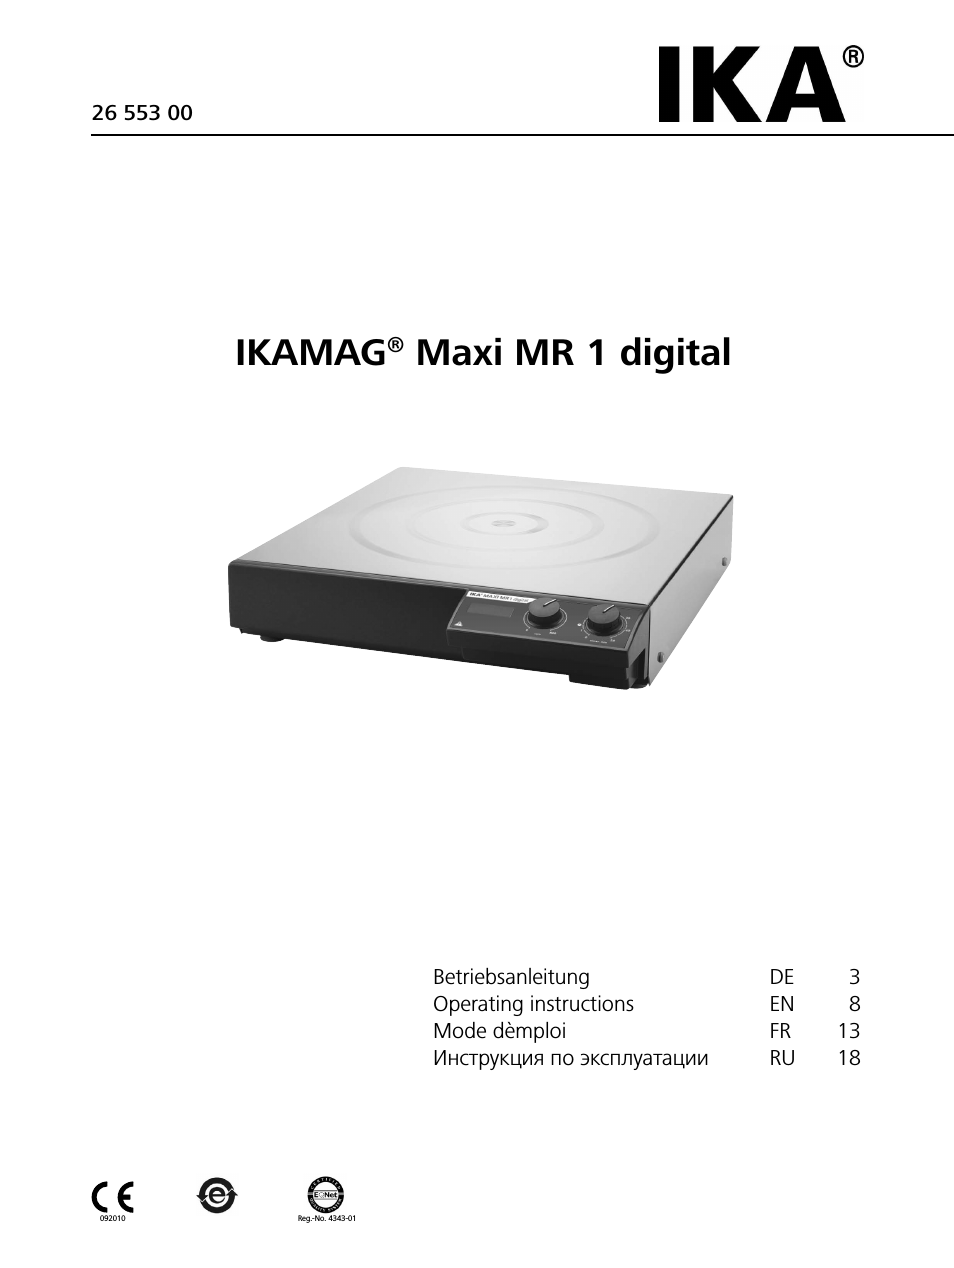 Maxi MR 1 digital